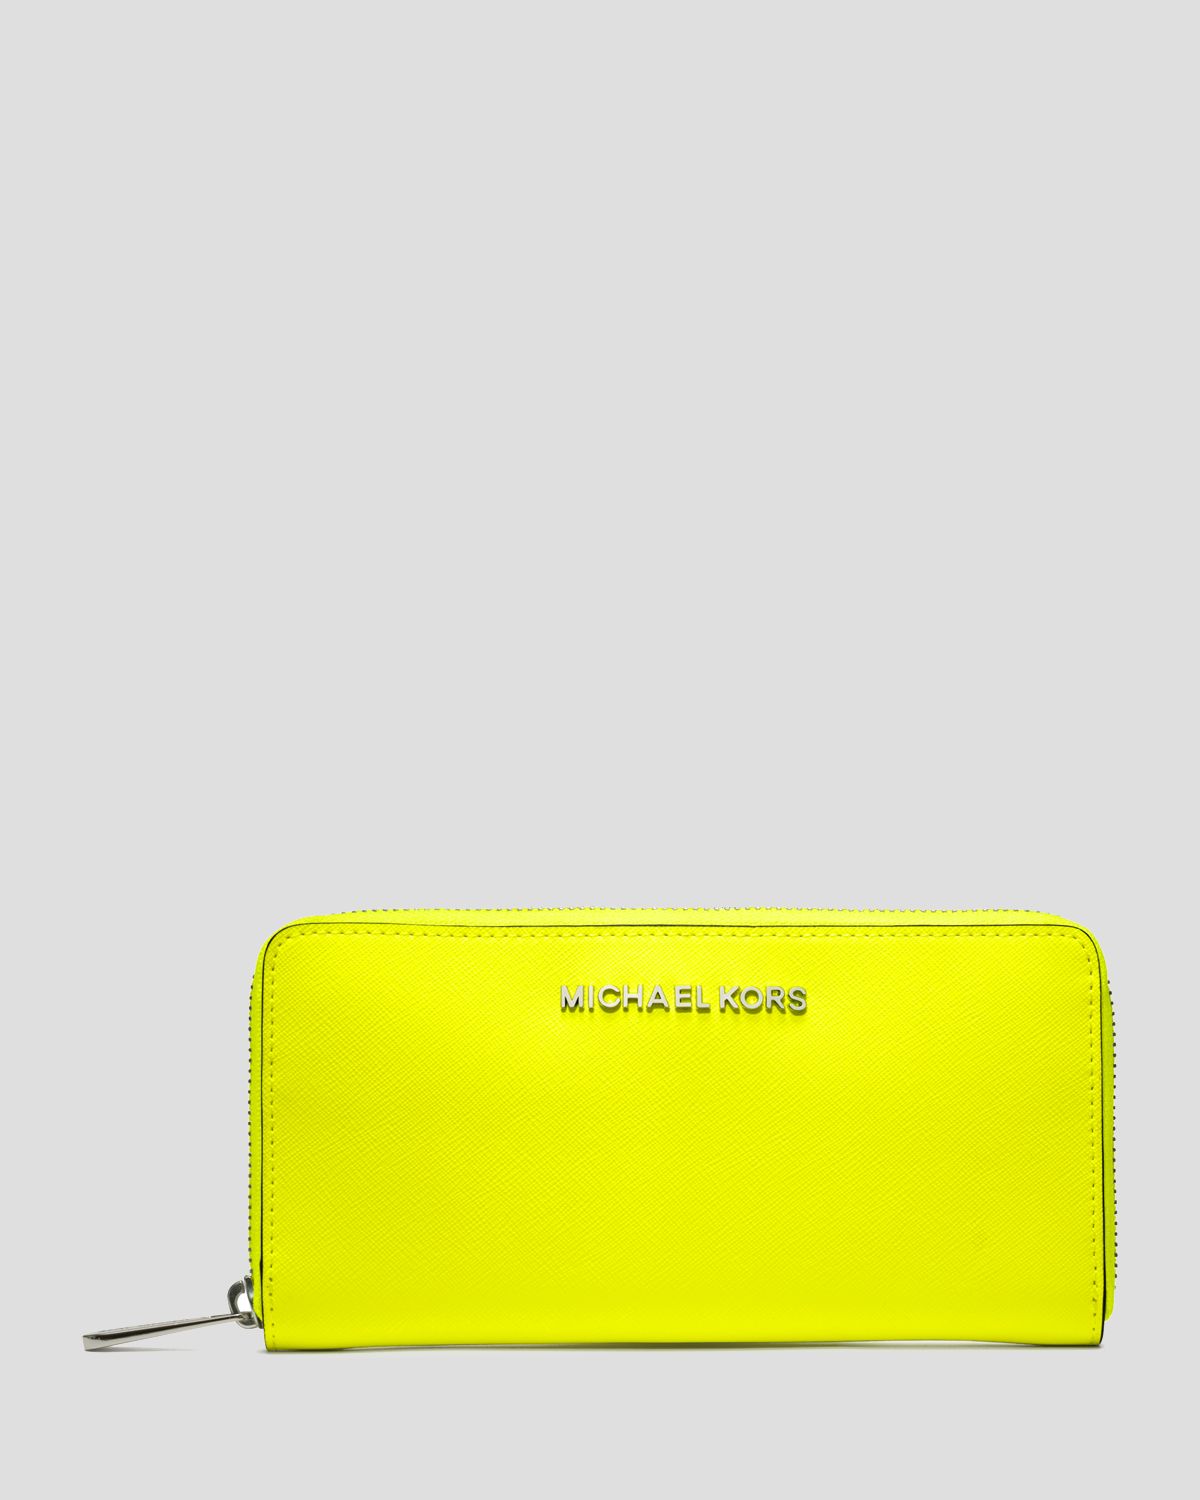 michael kors wallet neon yellow